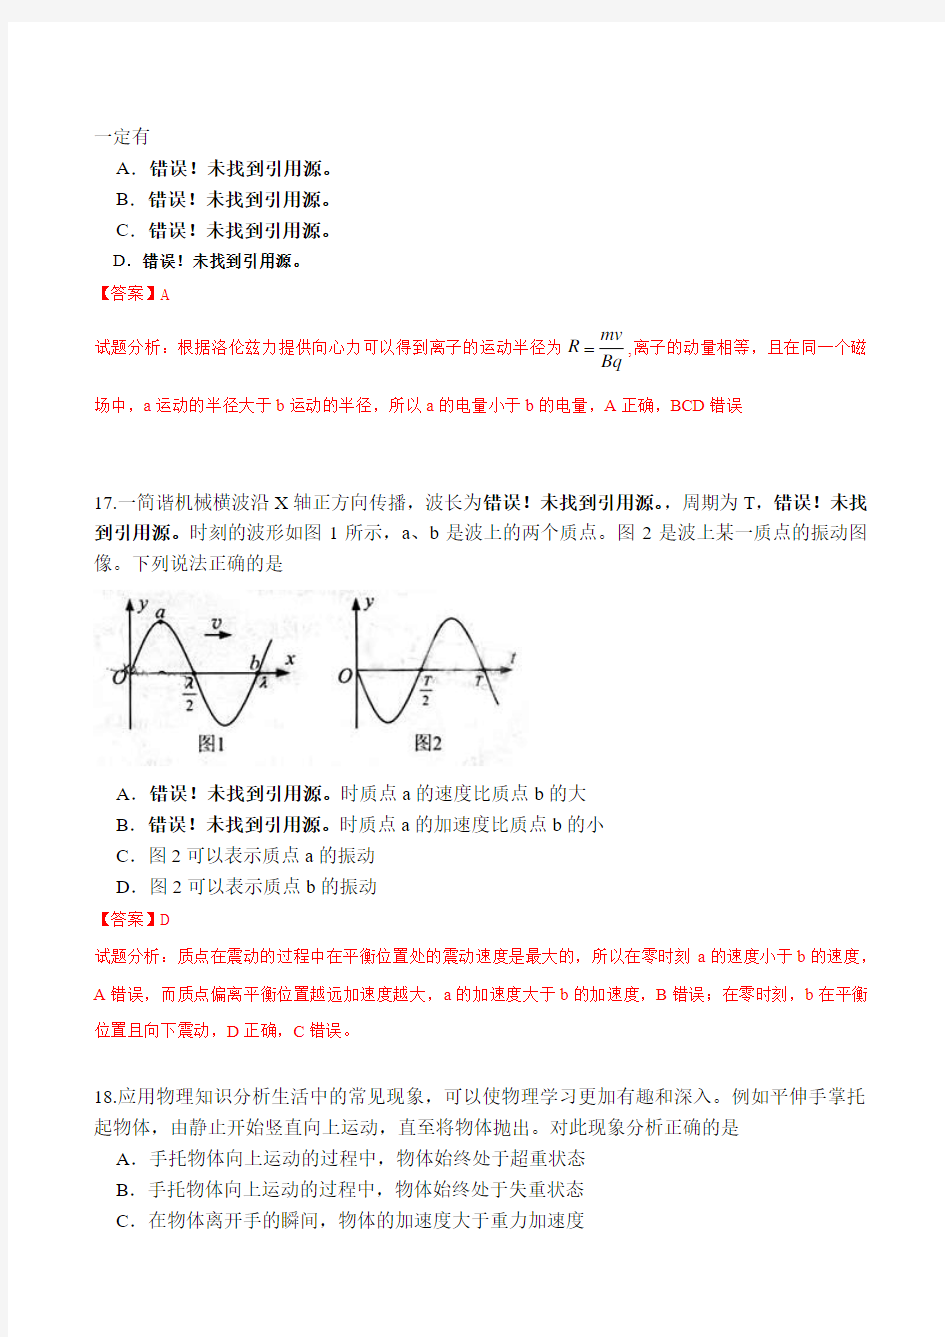 2014年高考真题——理综物理(北京卷)解析版